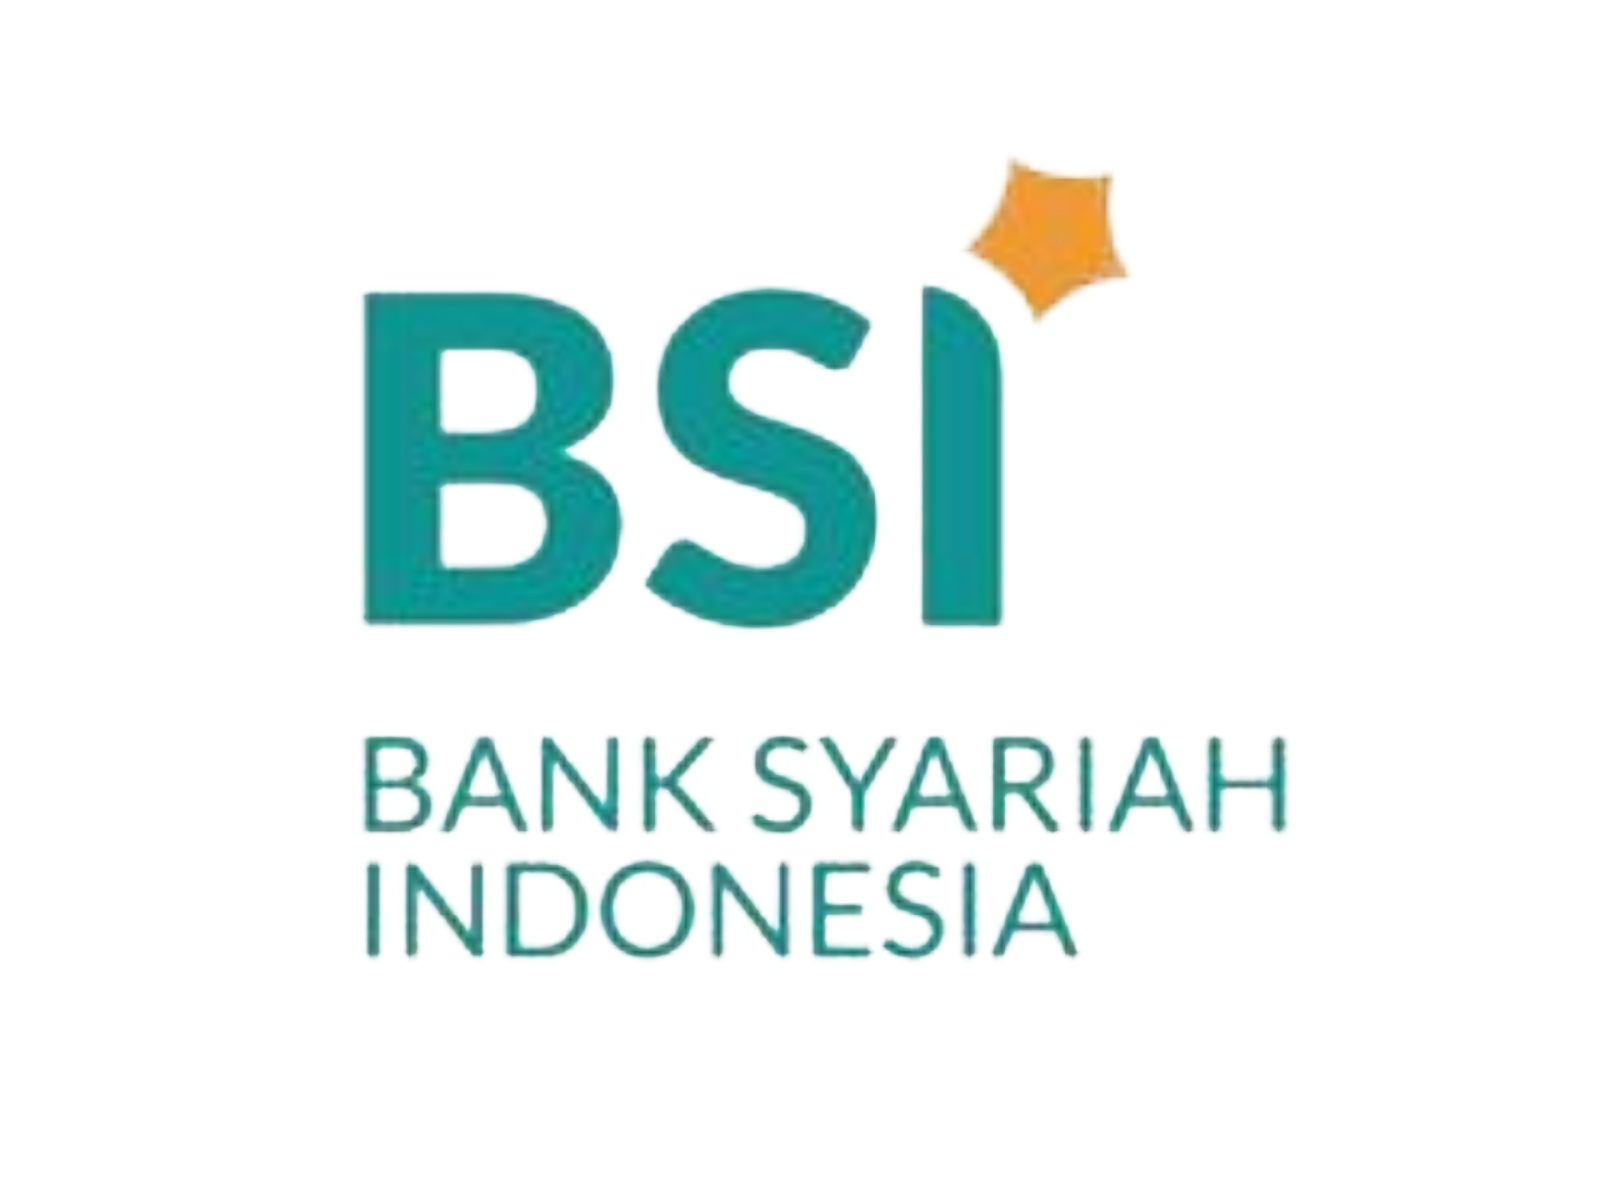 Bank BSI YAI